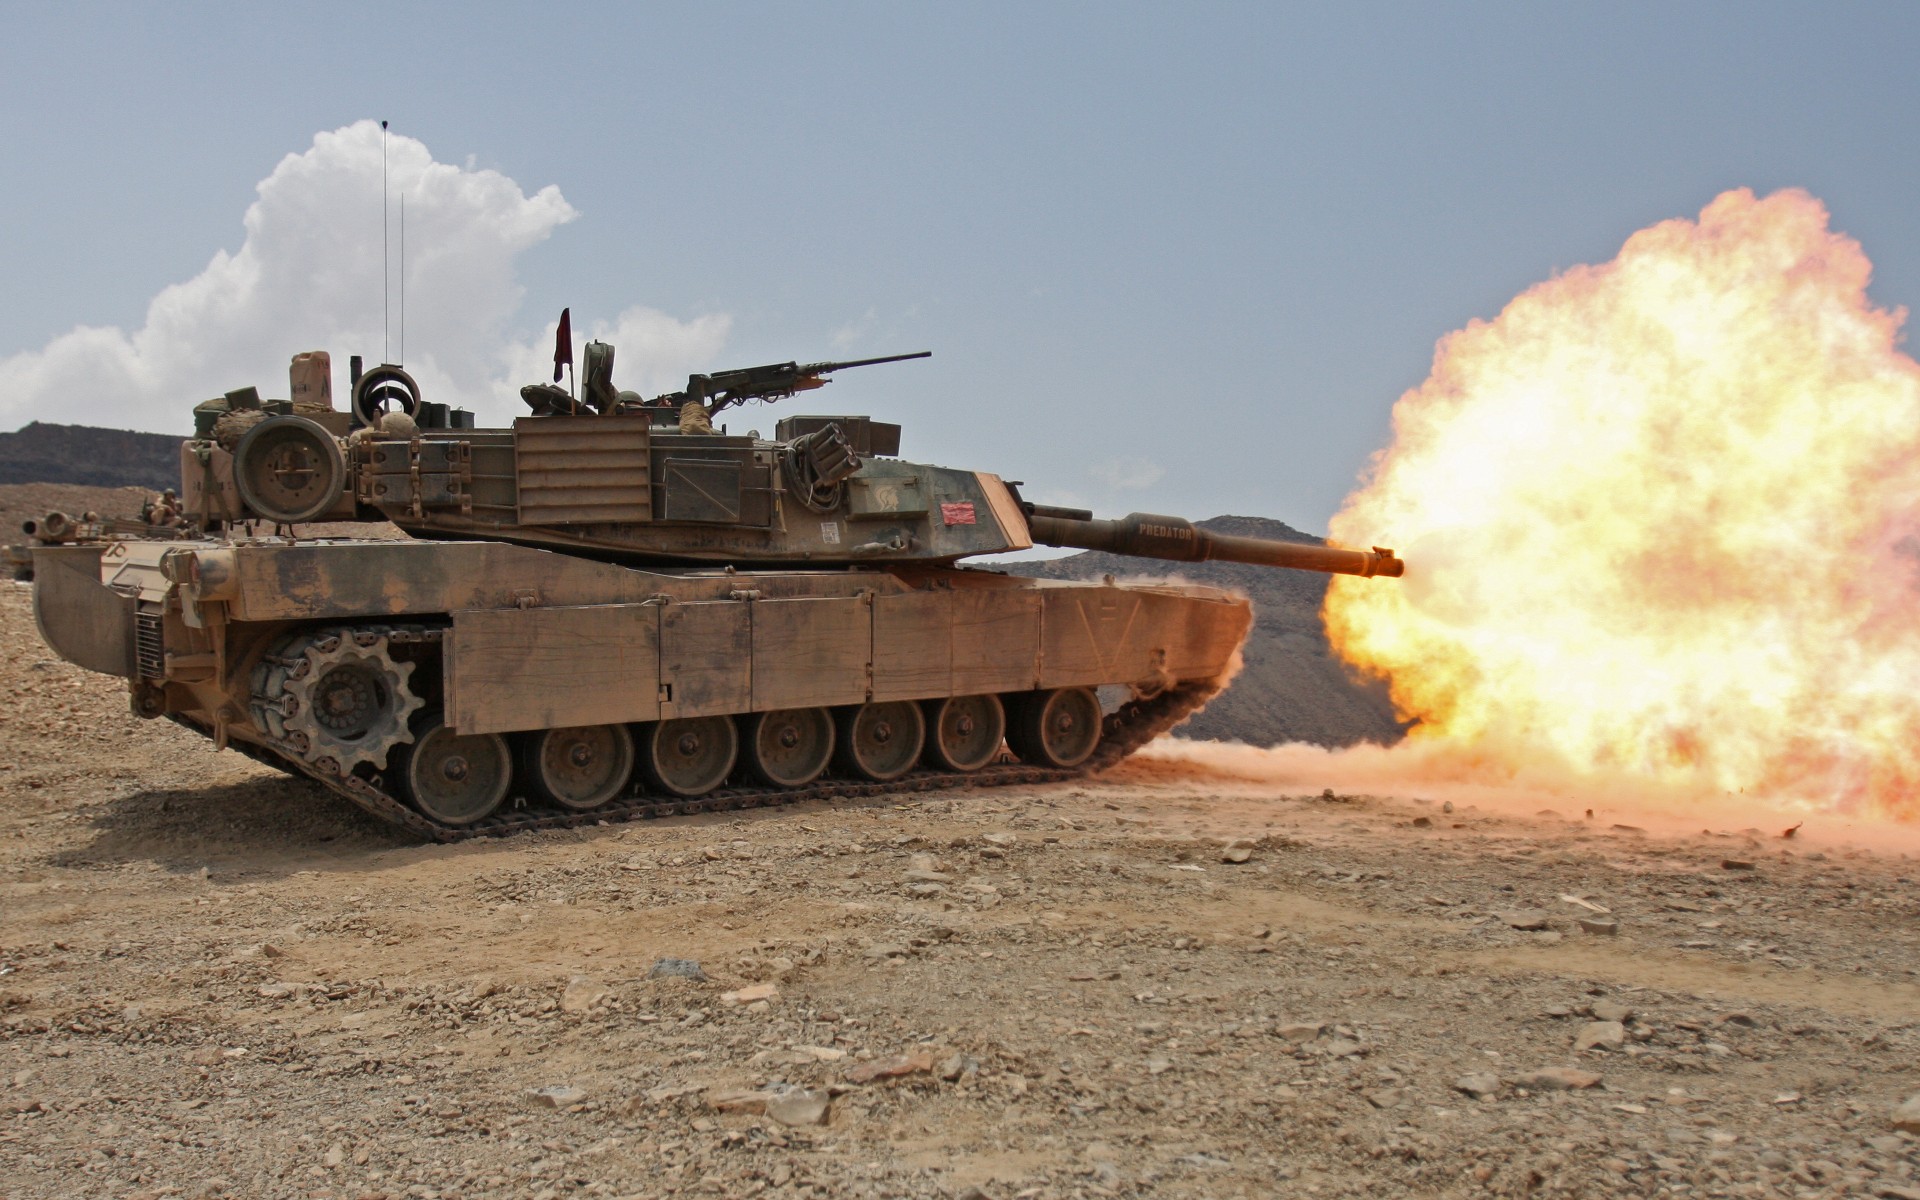 War Army Military Deserts Tanks M1 Abrams Djibouti